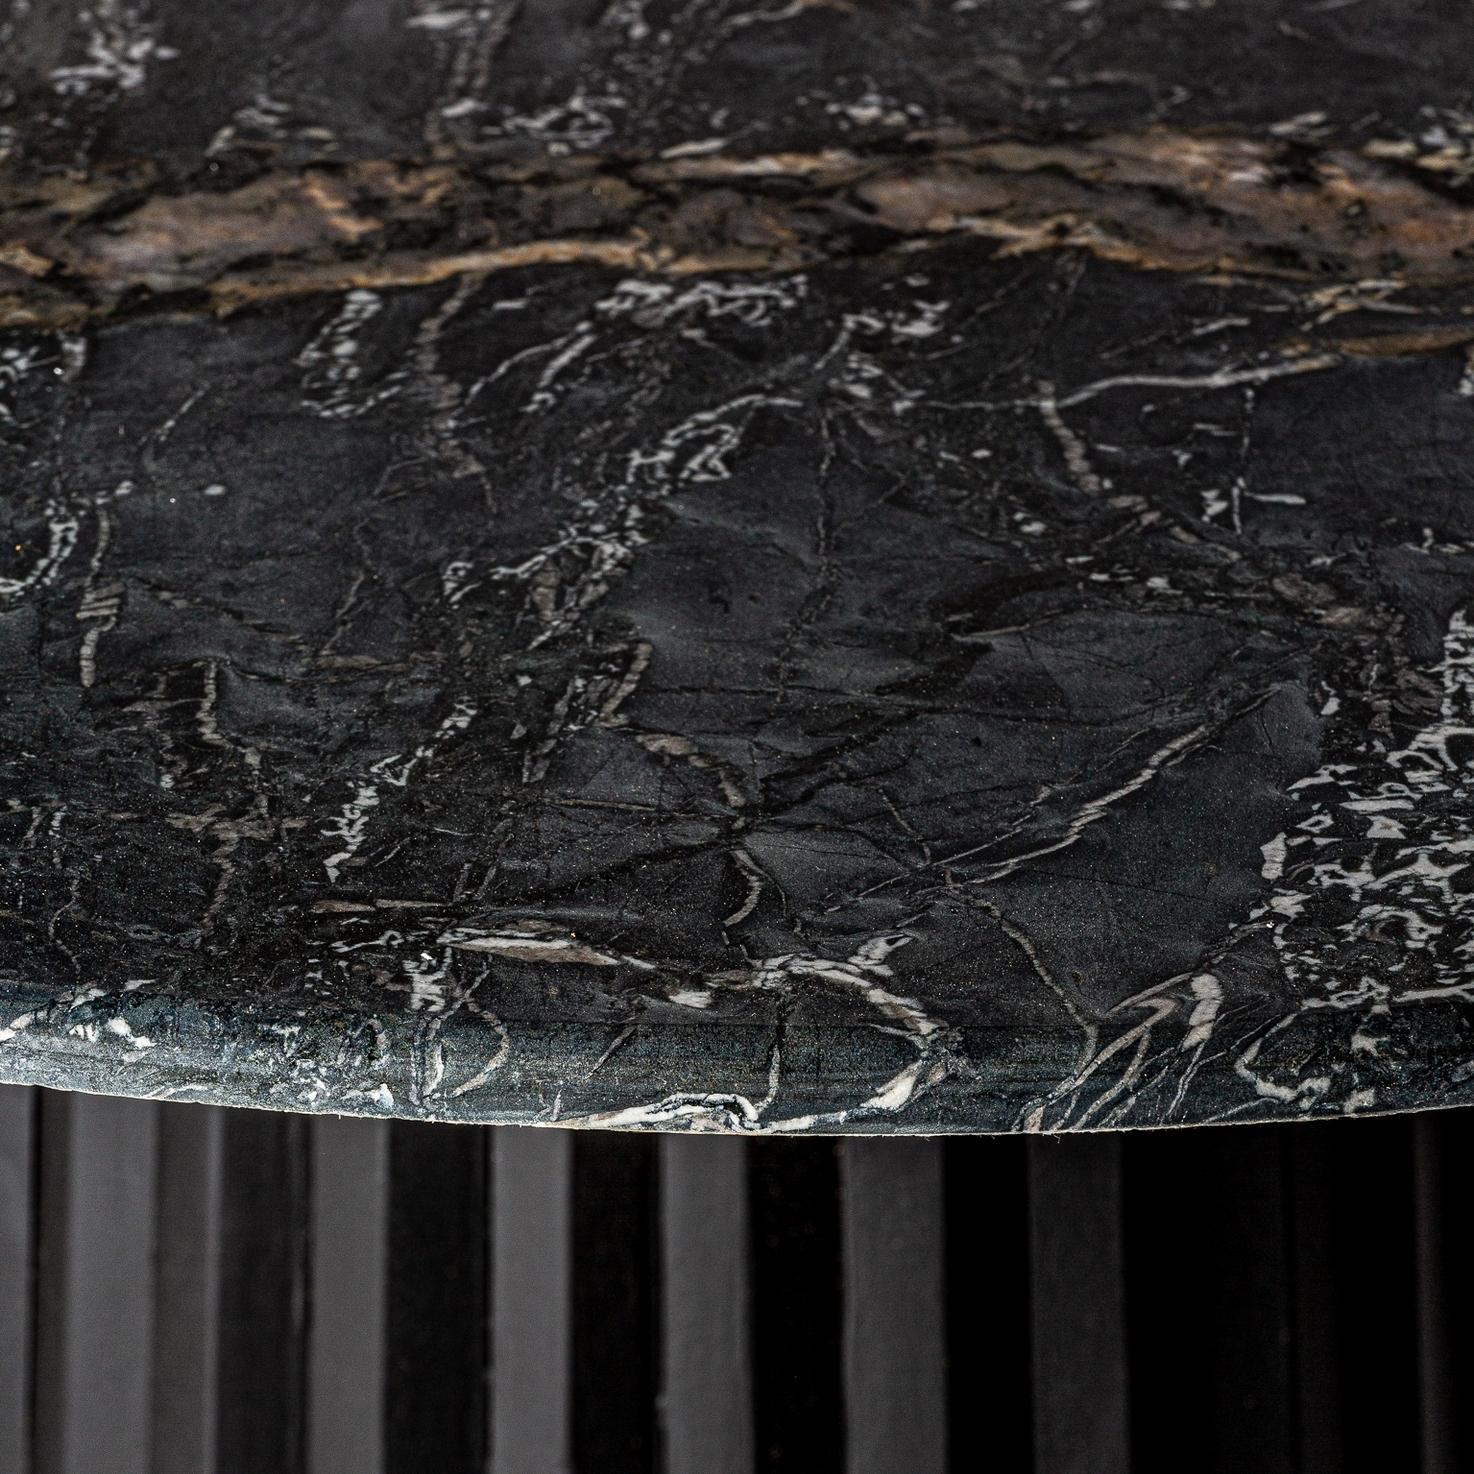 Runder Sockeltisch im italienischen Designstil, bestehend aus einem grafischen Holzsockel mit einer runden schwarzen Marmorplatte.